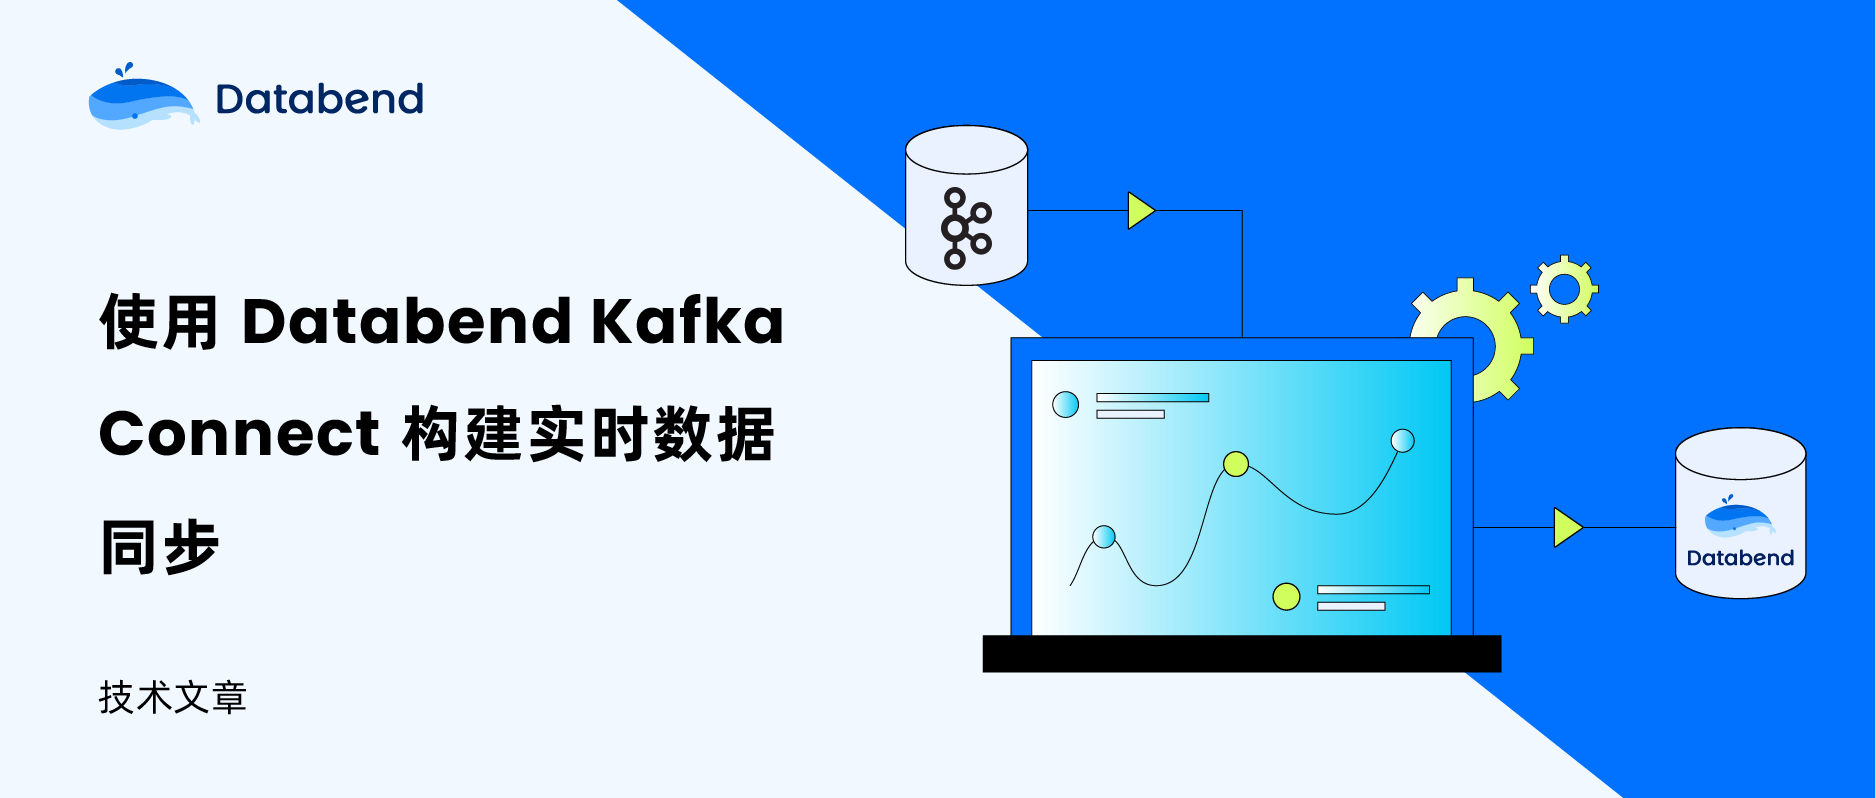 使用 Databend Kafka Connect 构建实时数据同步